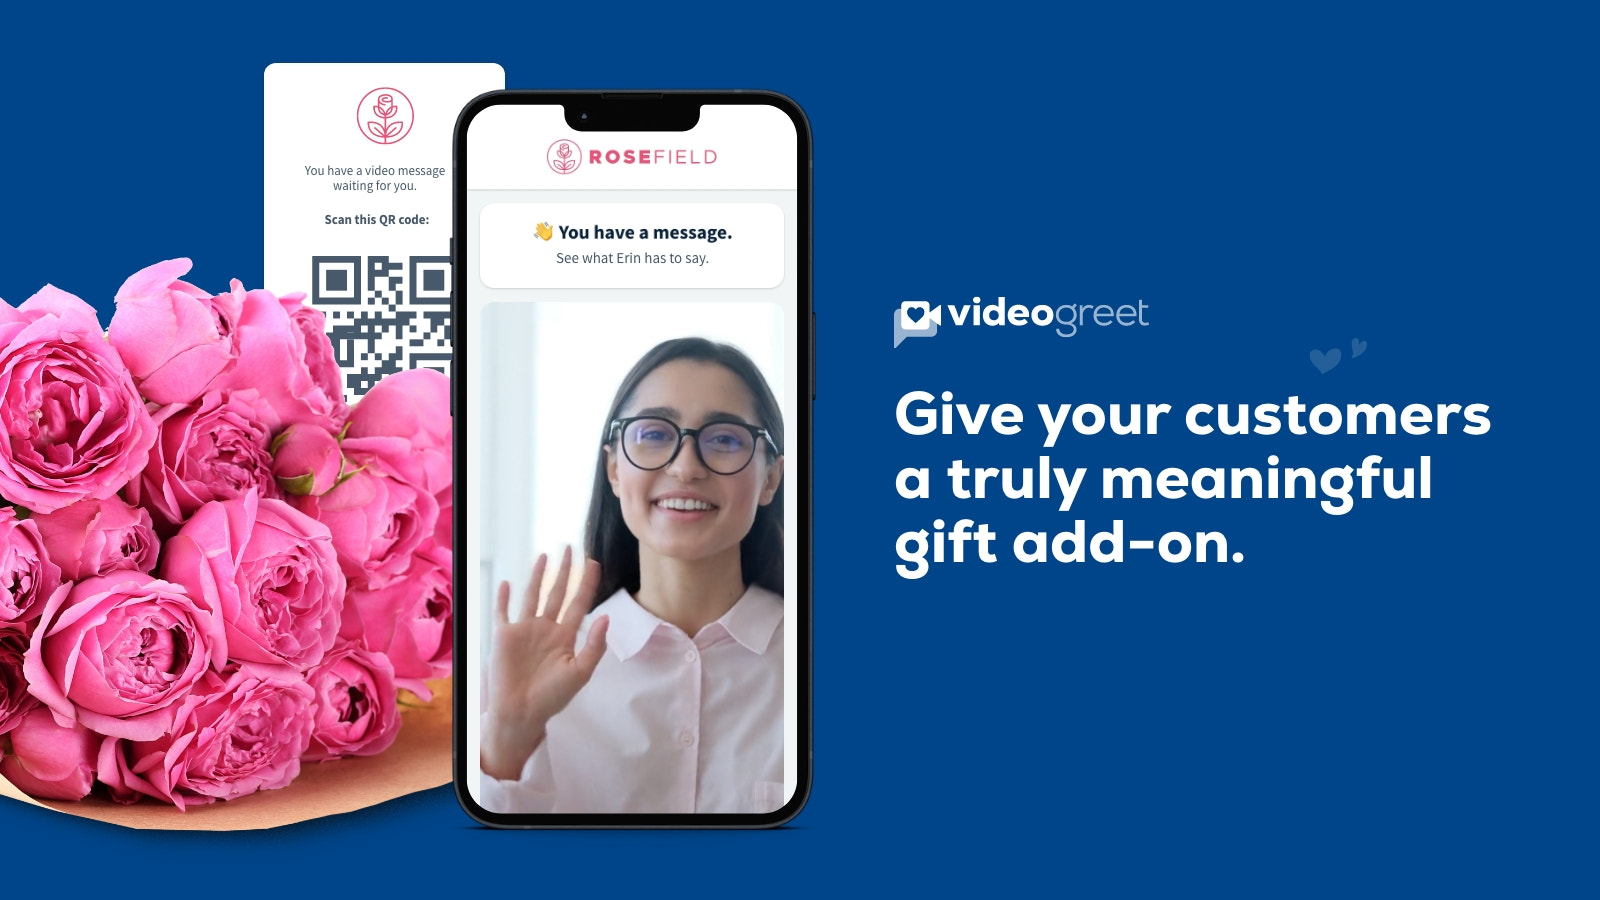 Permite a los clientes agregar saludos en video a los pedidos como un complemento de regalo.